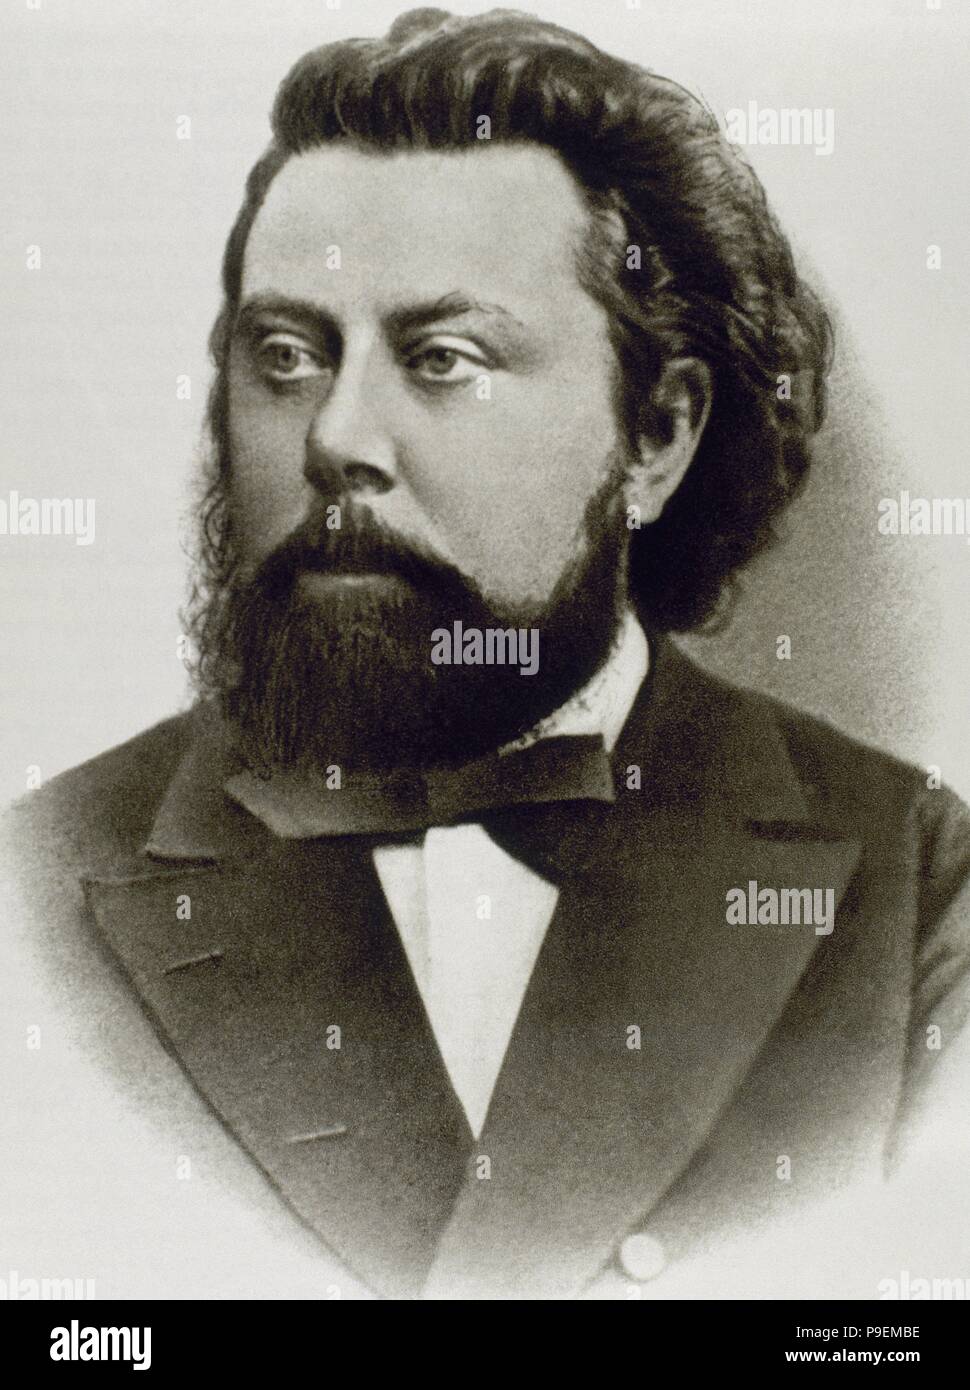 Modest Mussorgski (1839-1881). Russischen Komponisten. Porträt. Fotografie. Stockfoto